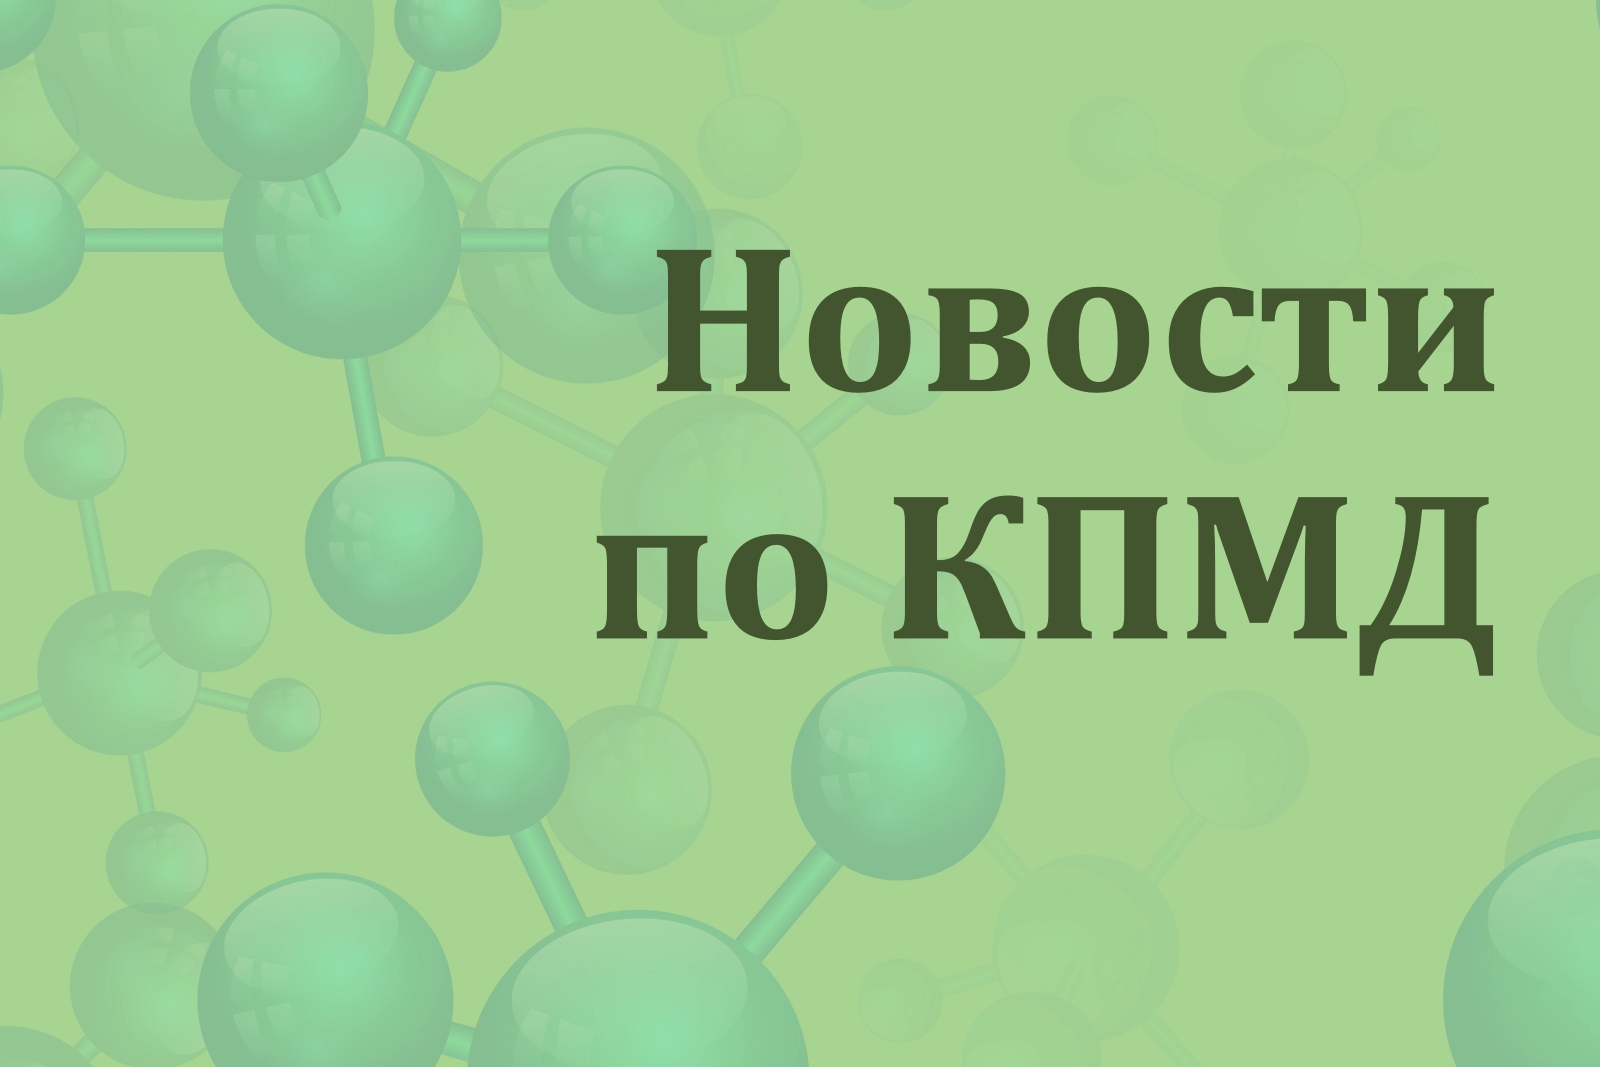 На зелёном фоне схематические молекулы и надпись "Новости по КПМД"